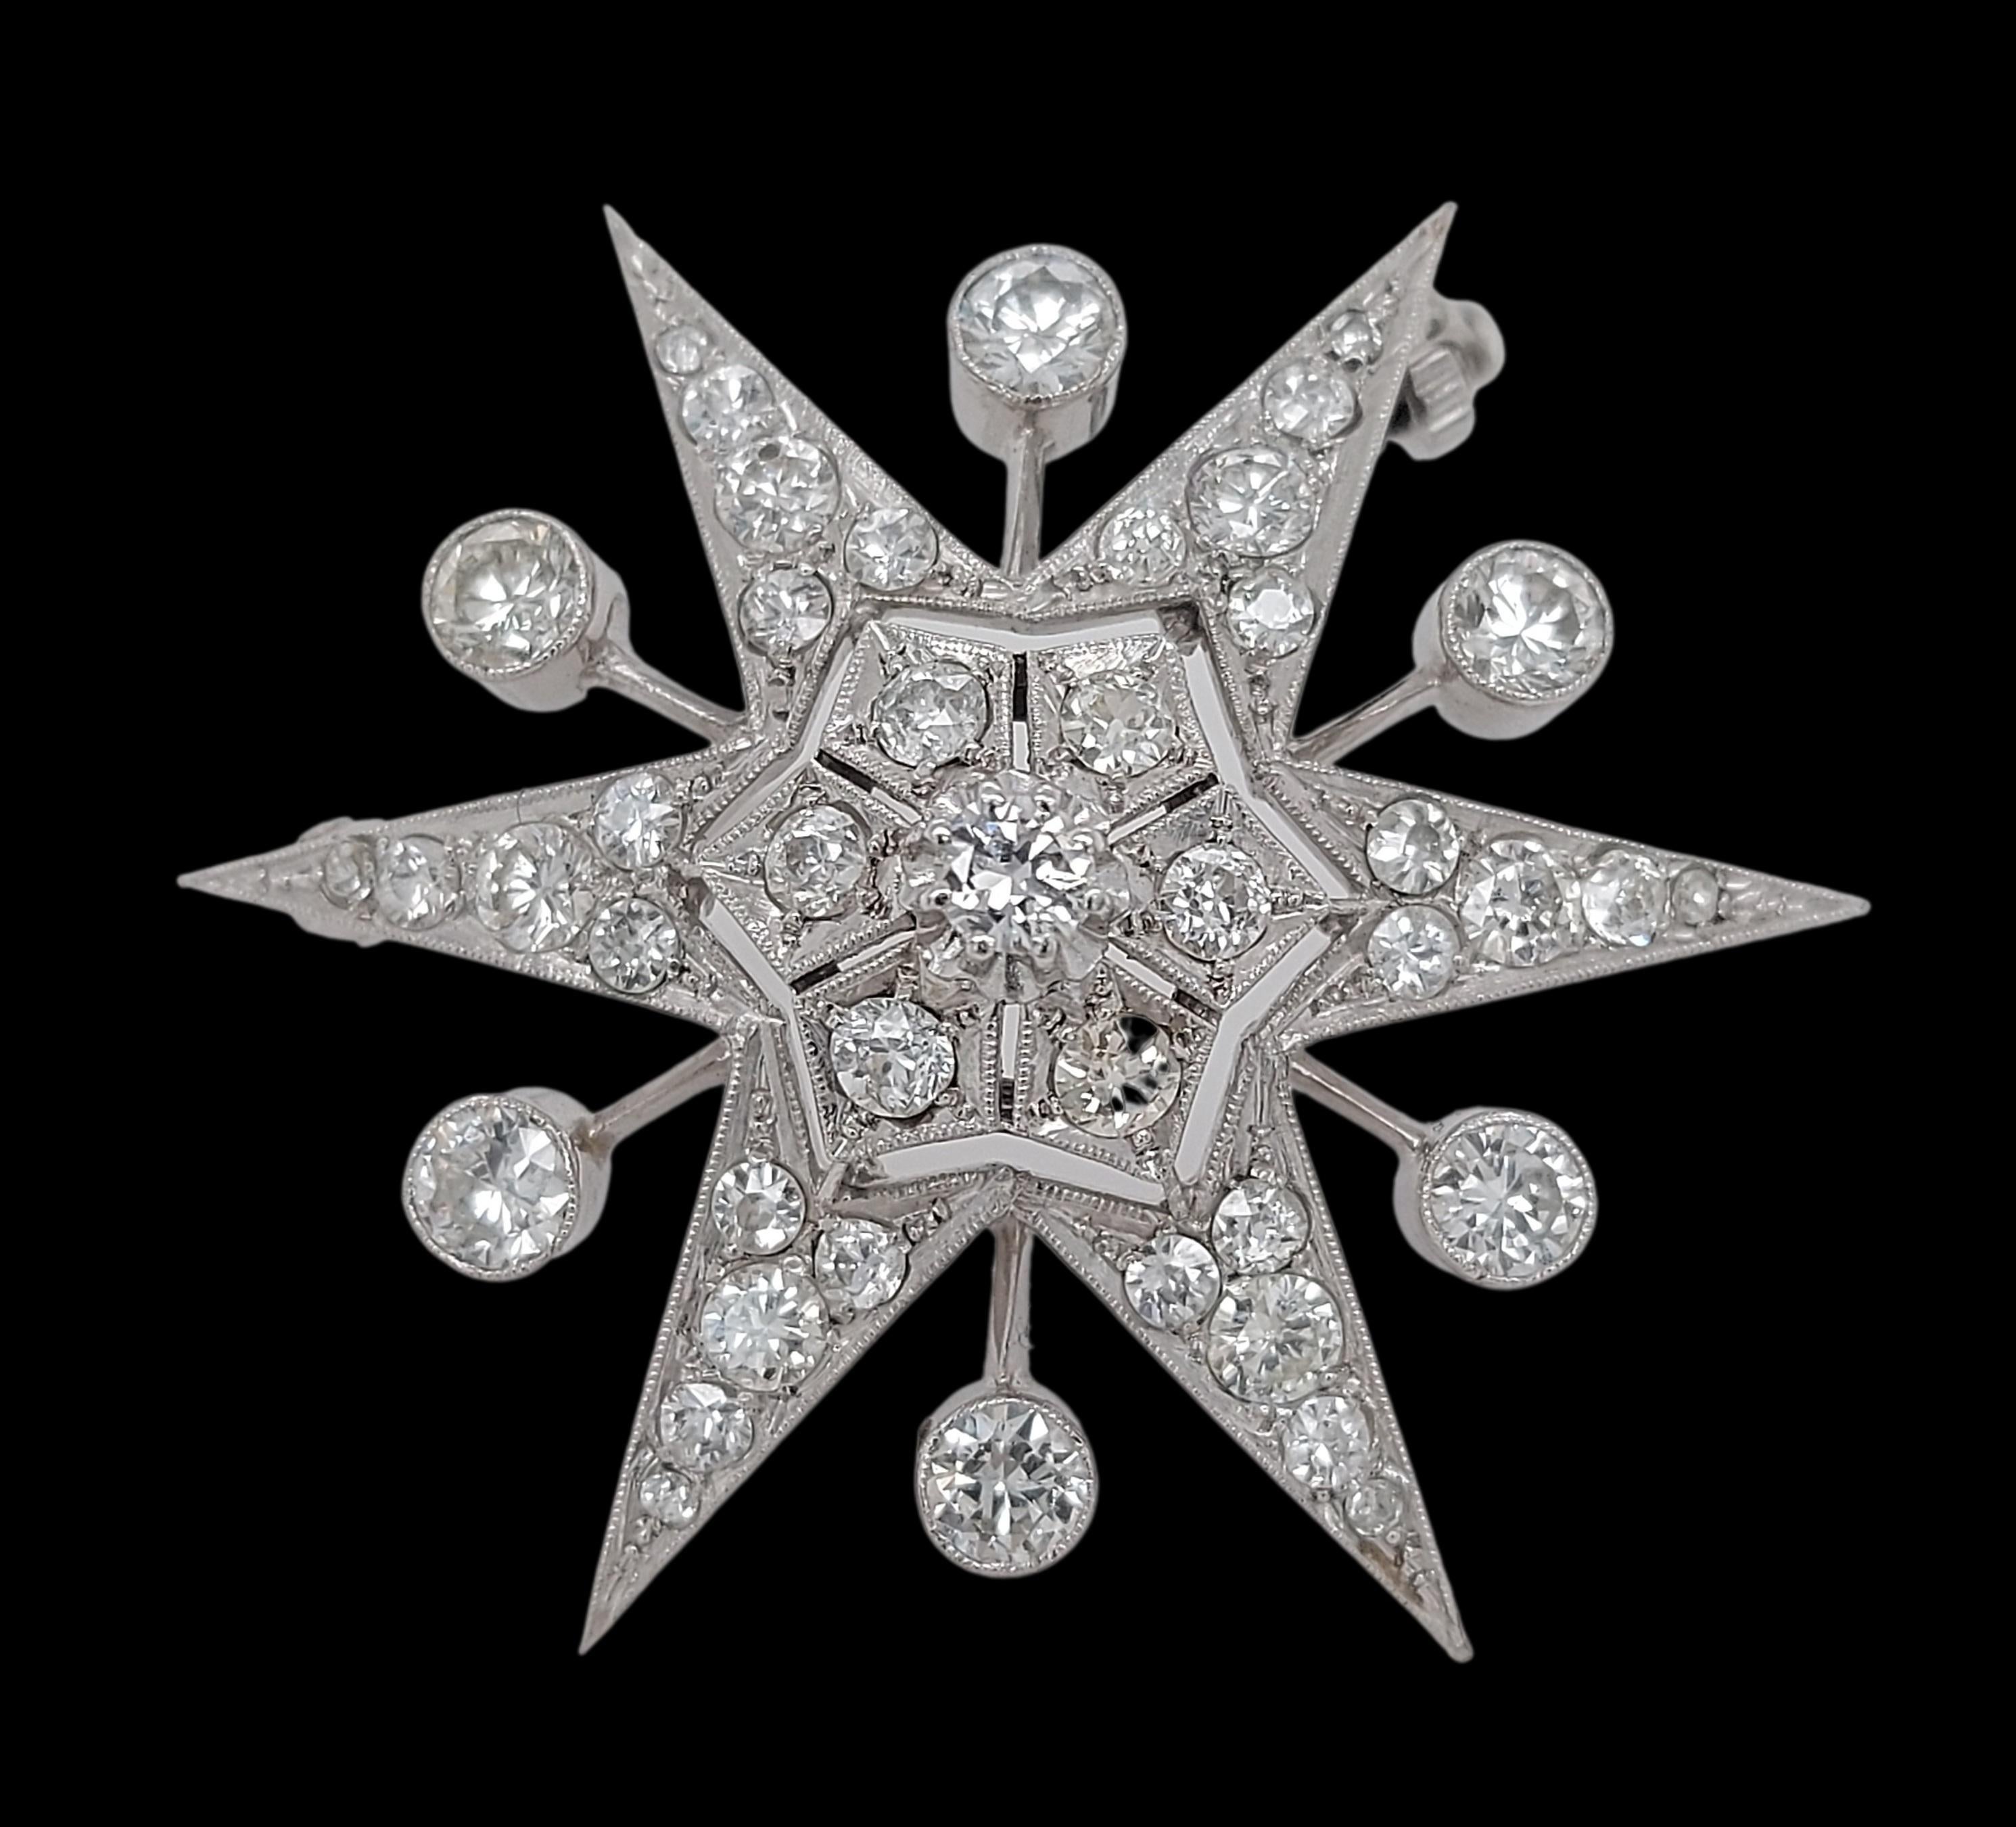 Broche/pendentif en or blanc 18 ct en forme d'étoile avec 3,8 ct de diamants

Magnifique broche qui se transforme en cintre par l'ajout d'une chaîne.

Diamants : Diamants taillés à l'ancienne, ensemble d'environ 3,8 ct. 

Matériau : Or blanc